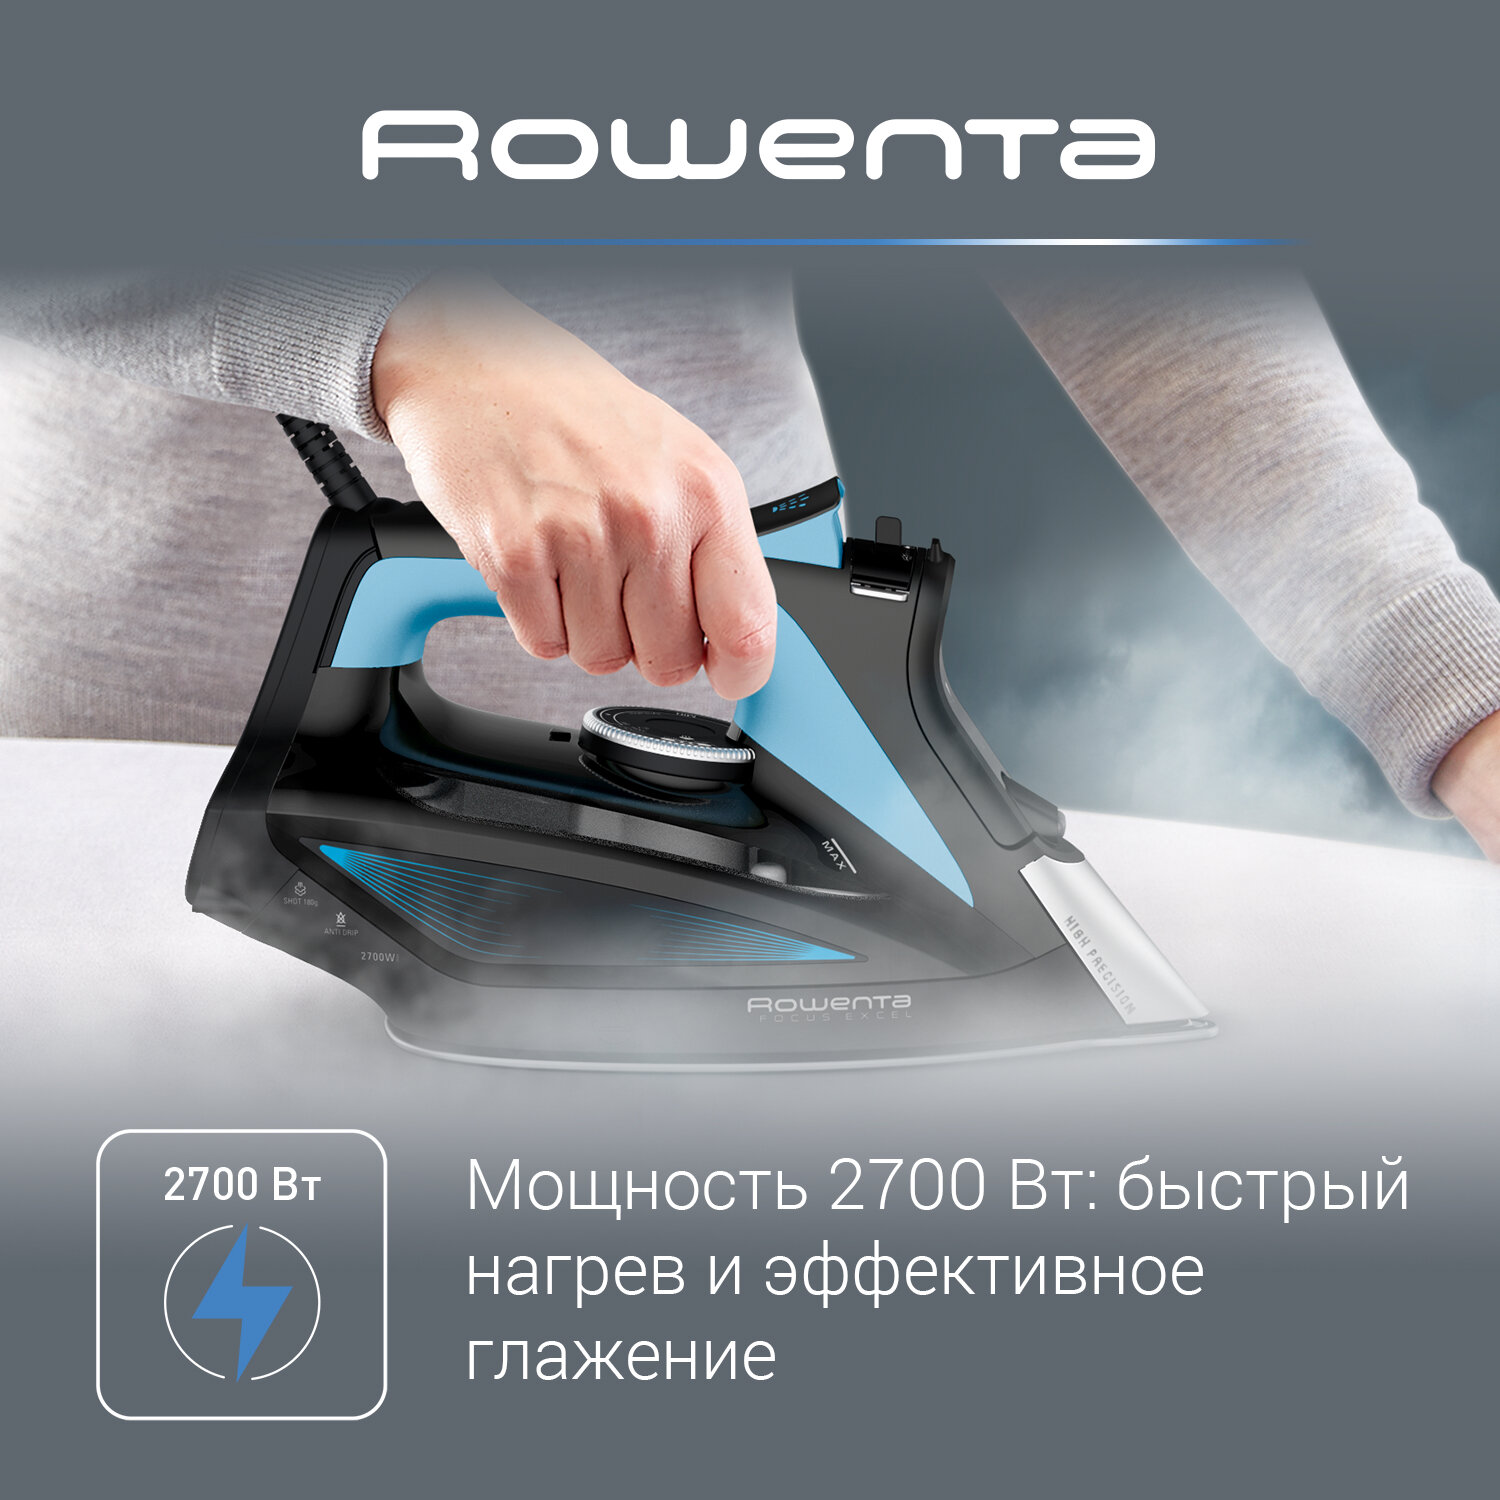 Утюг Rowenta Focus Excel DW5310D1, 2700 Вт, черный/синий